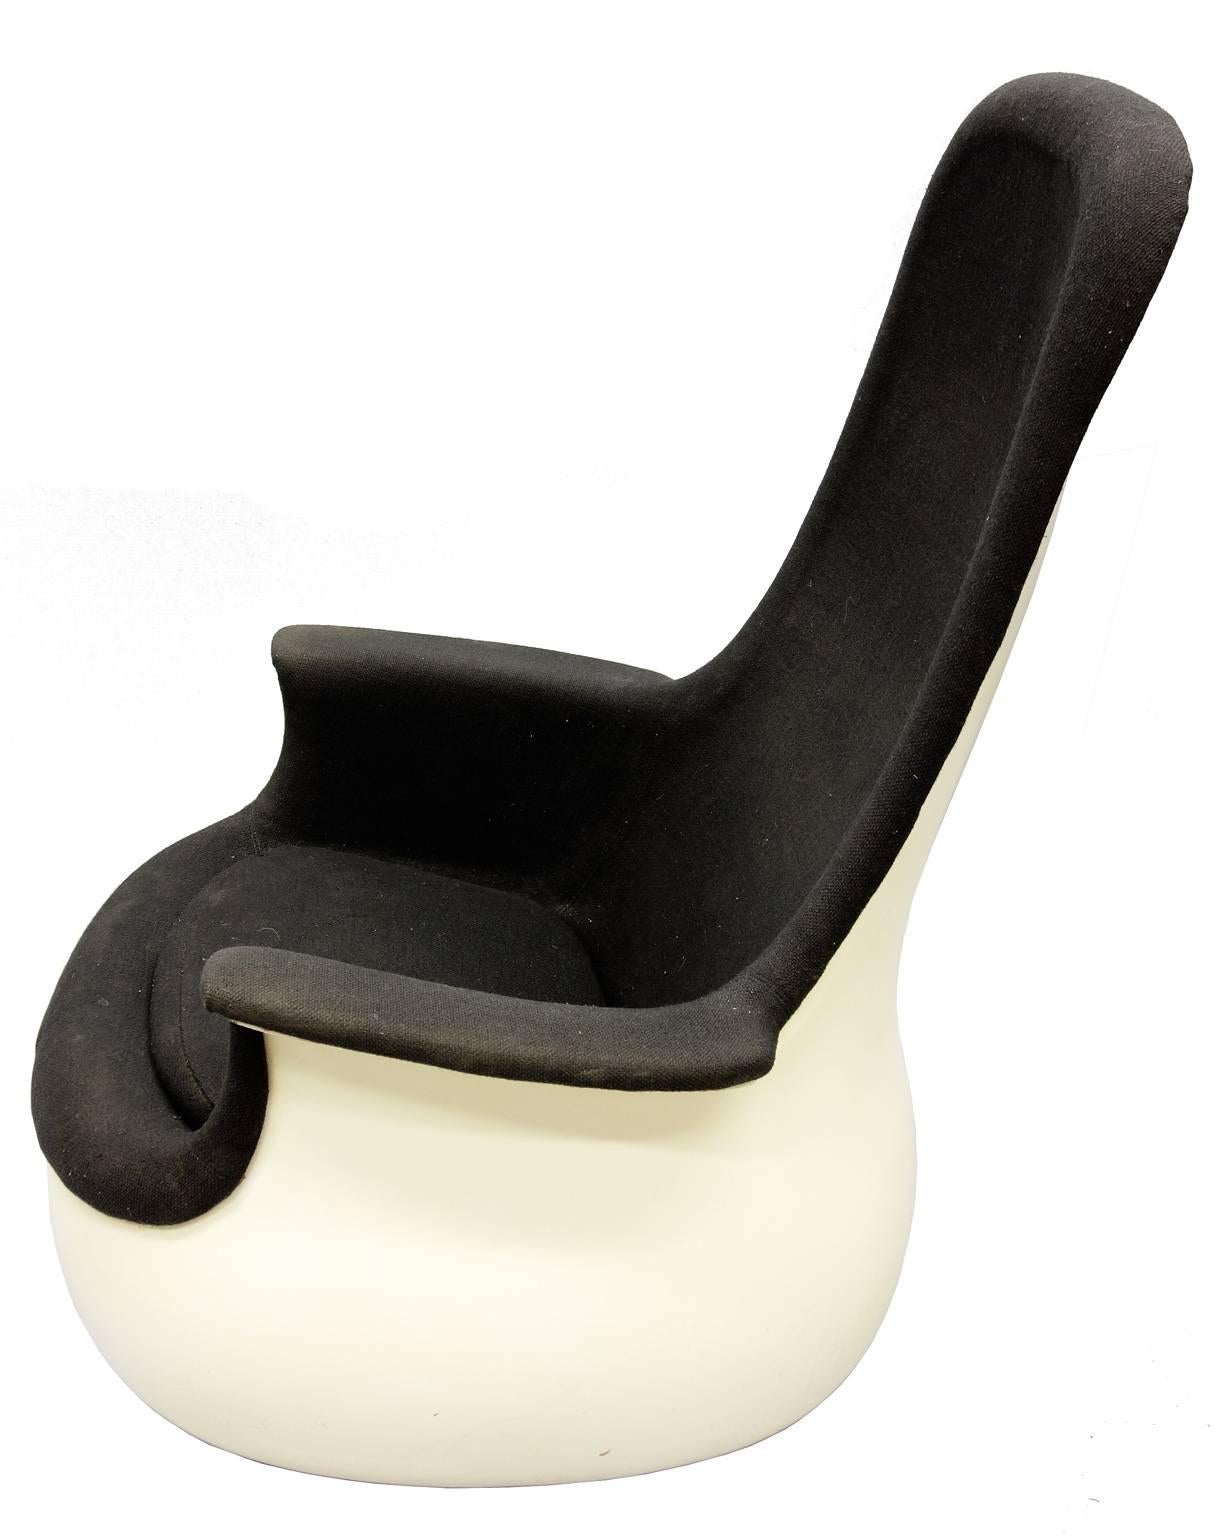 Marc Held war der erste und einzige französische Designer von Knoll. Der Culbuto-Stuhl wurde nur für kurze Zeit (1967-1970) hergestellt und es gibt nur noch eine Handvoll davon. Der Stuhl aus gegossenem Fiberglas wippt und dreht sich auf der